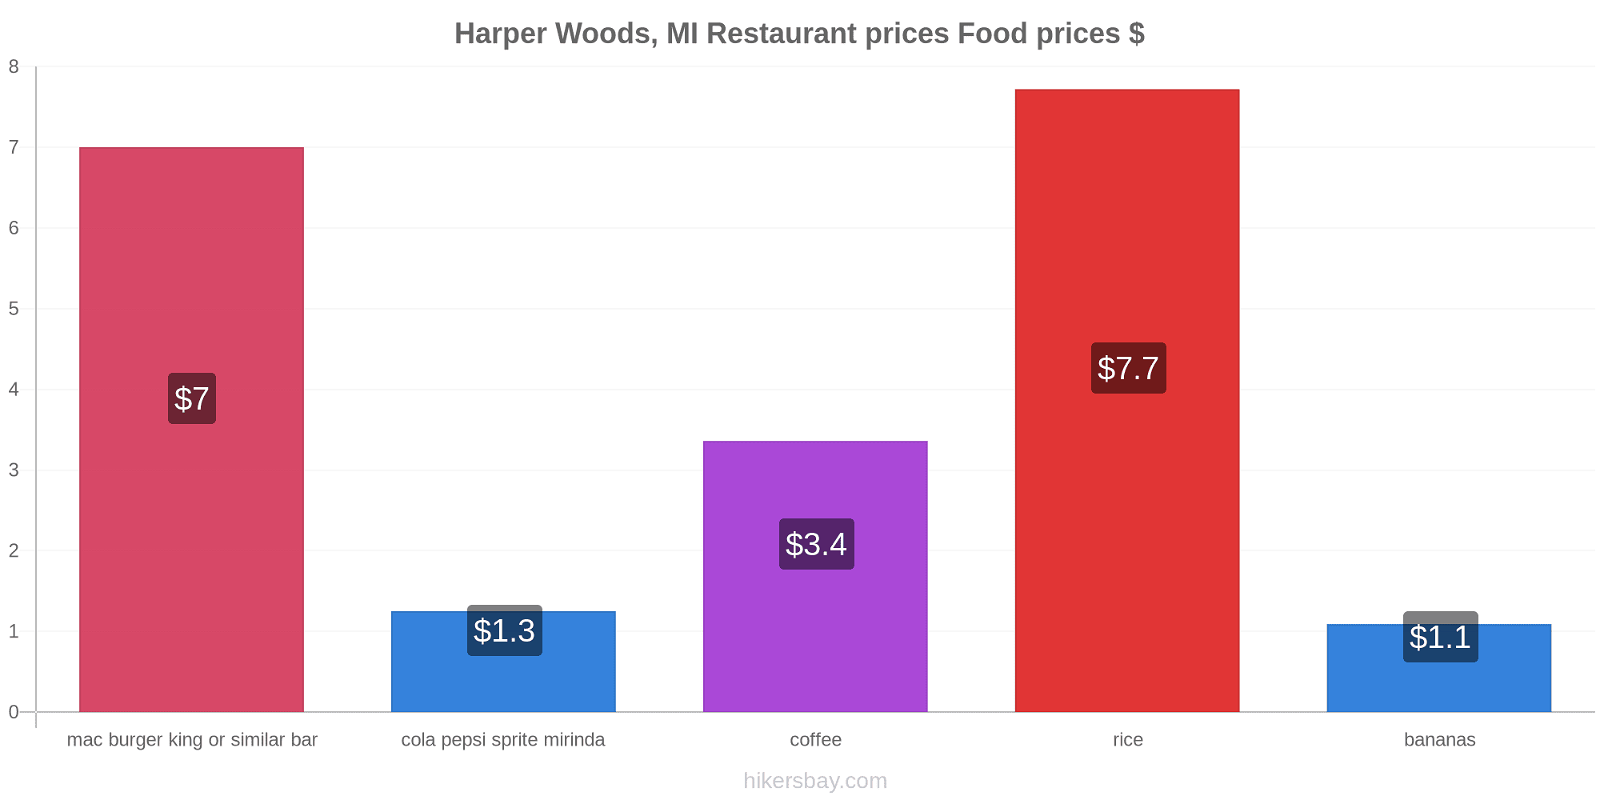 Harper Woods, MI price changes hikersbay.com